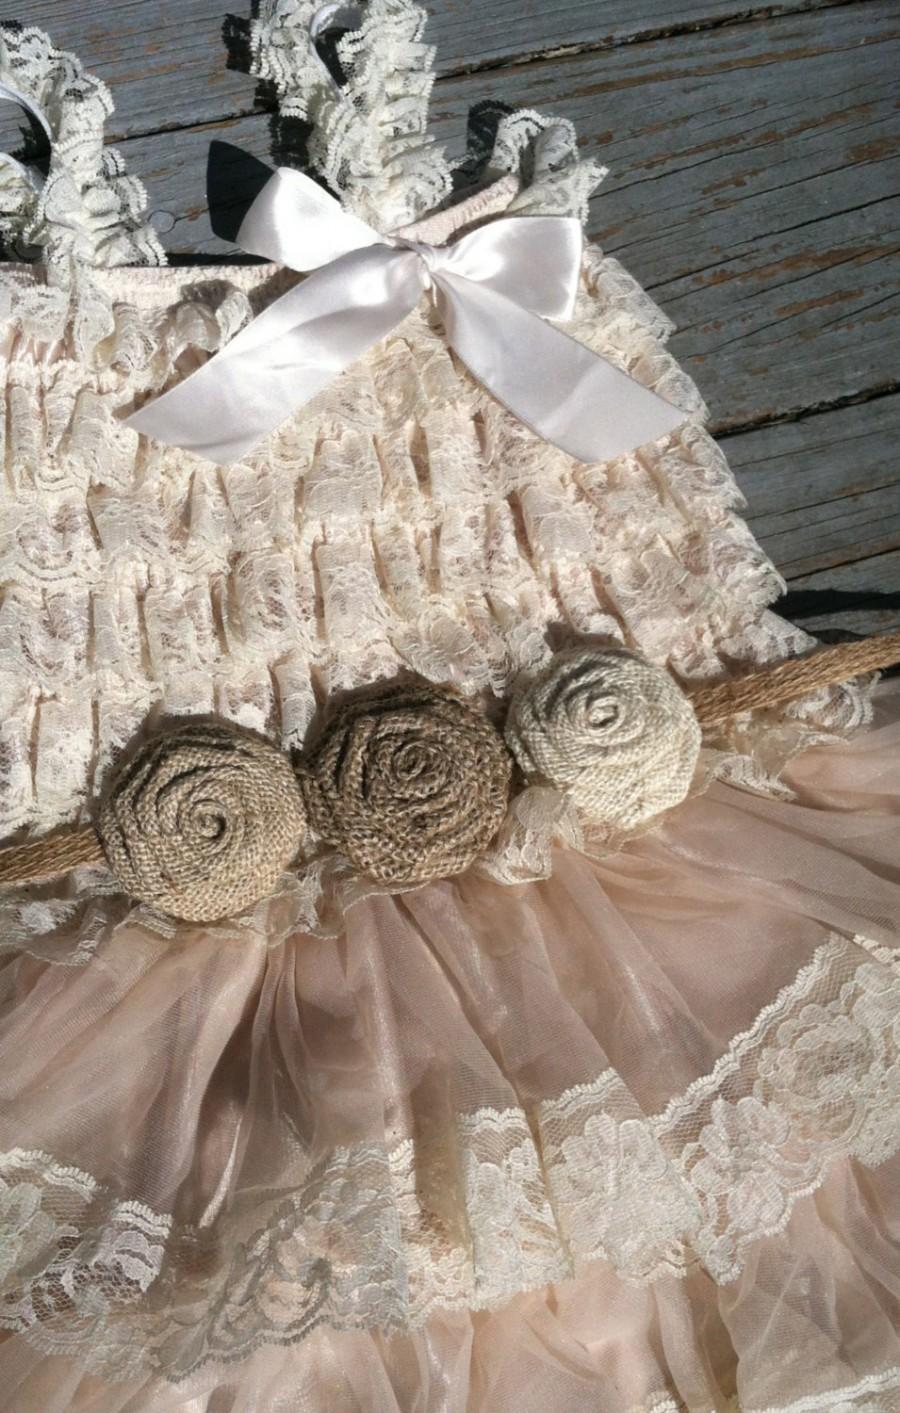 زفاف - Rustic Flower Girl Dress Lace Pettidress/Rustic Flower Girl Outfit/Wheat Cream Flowergirl/Country Wedding/Burlap/Jute Belt